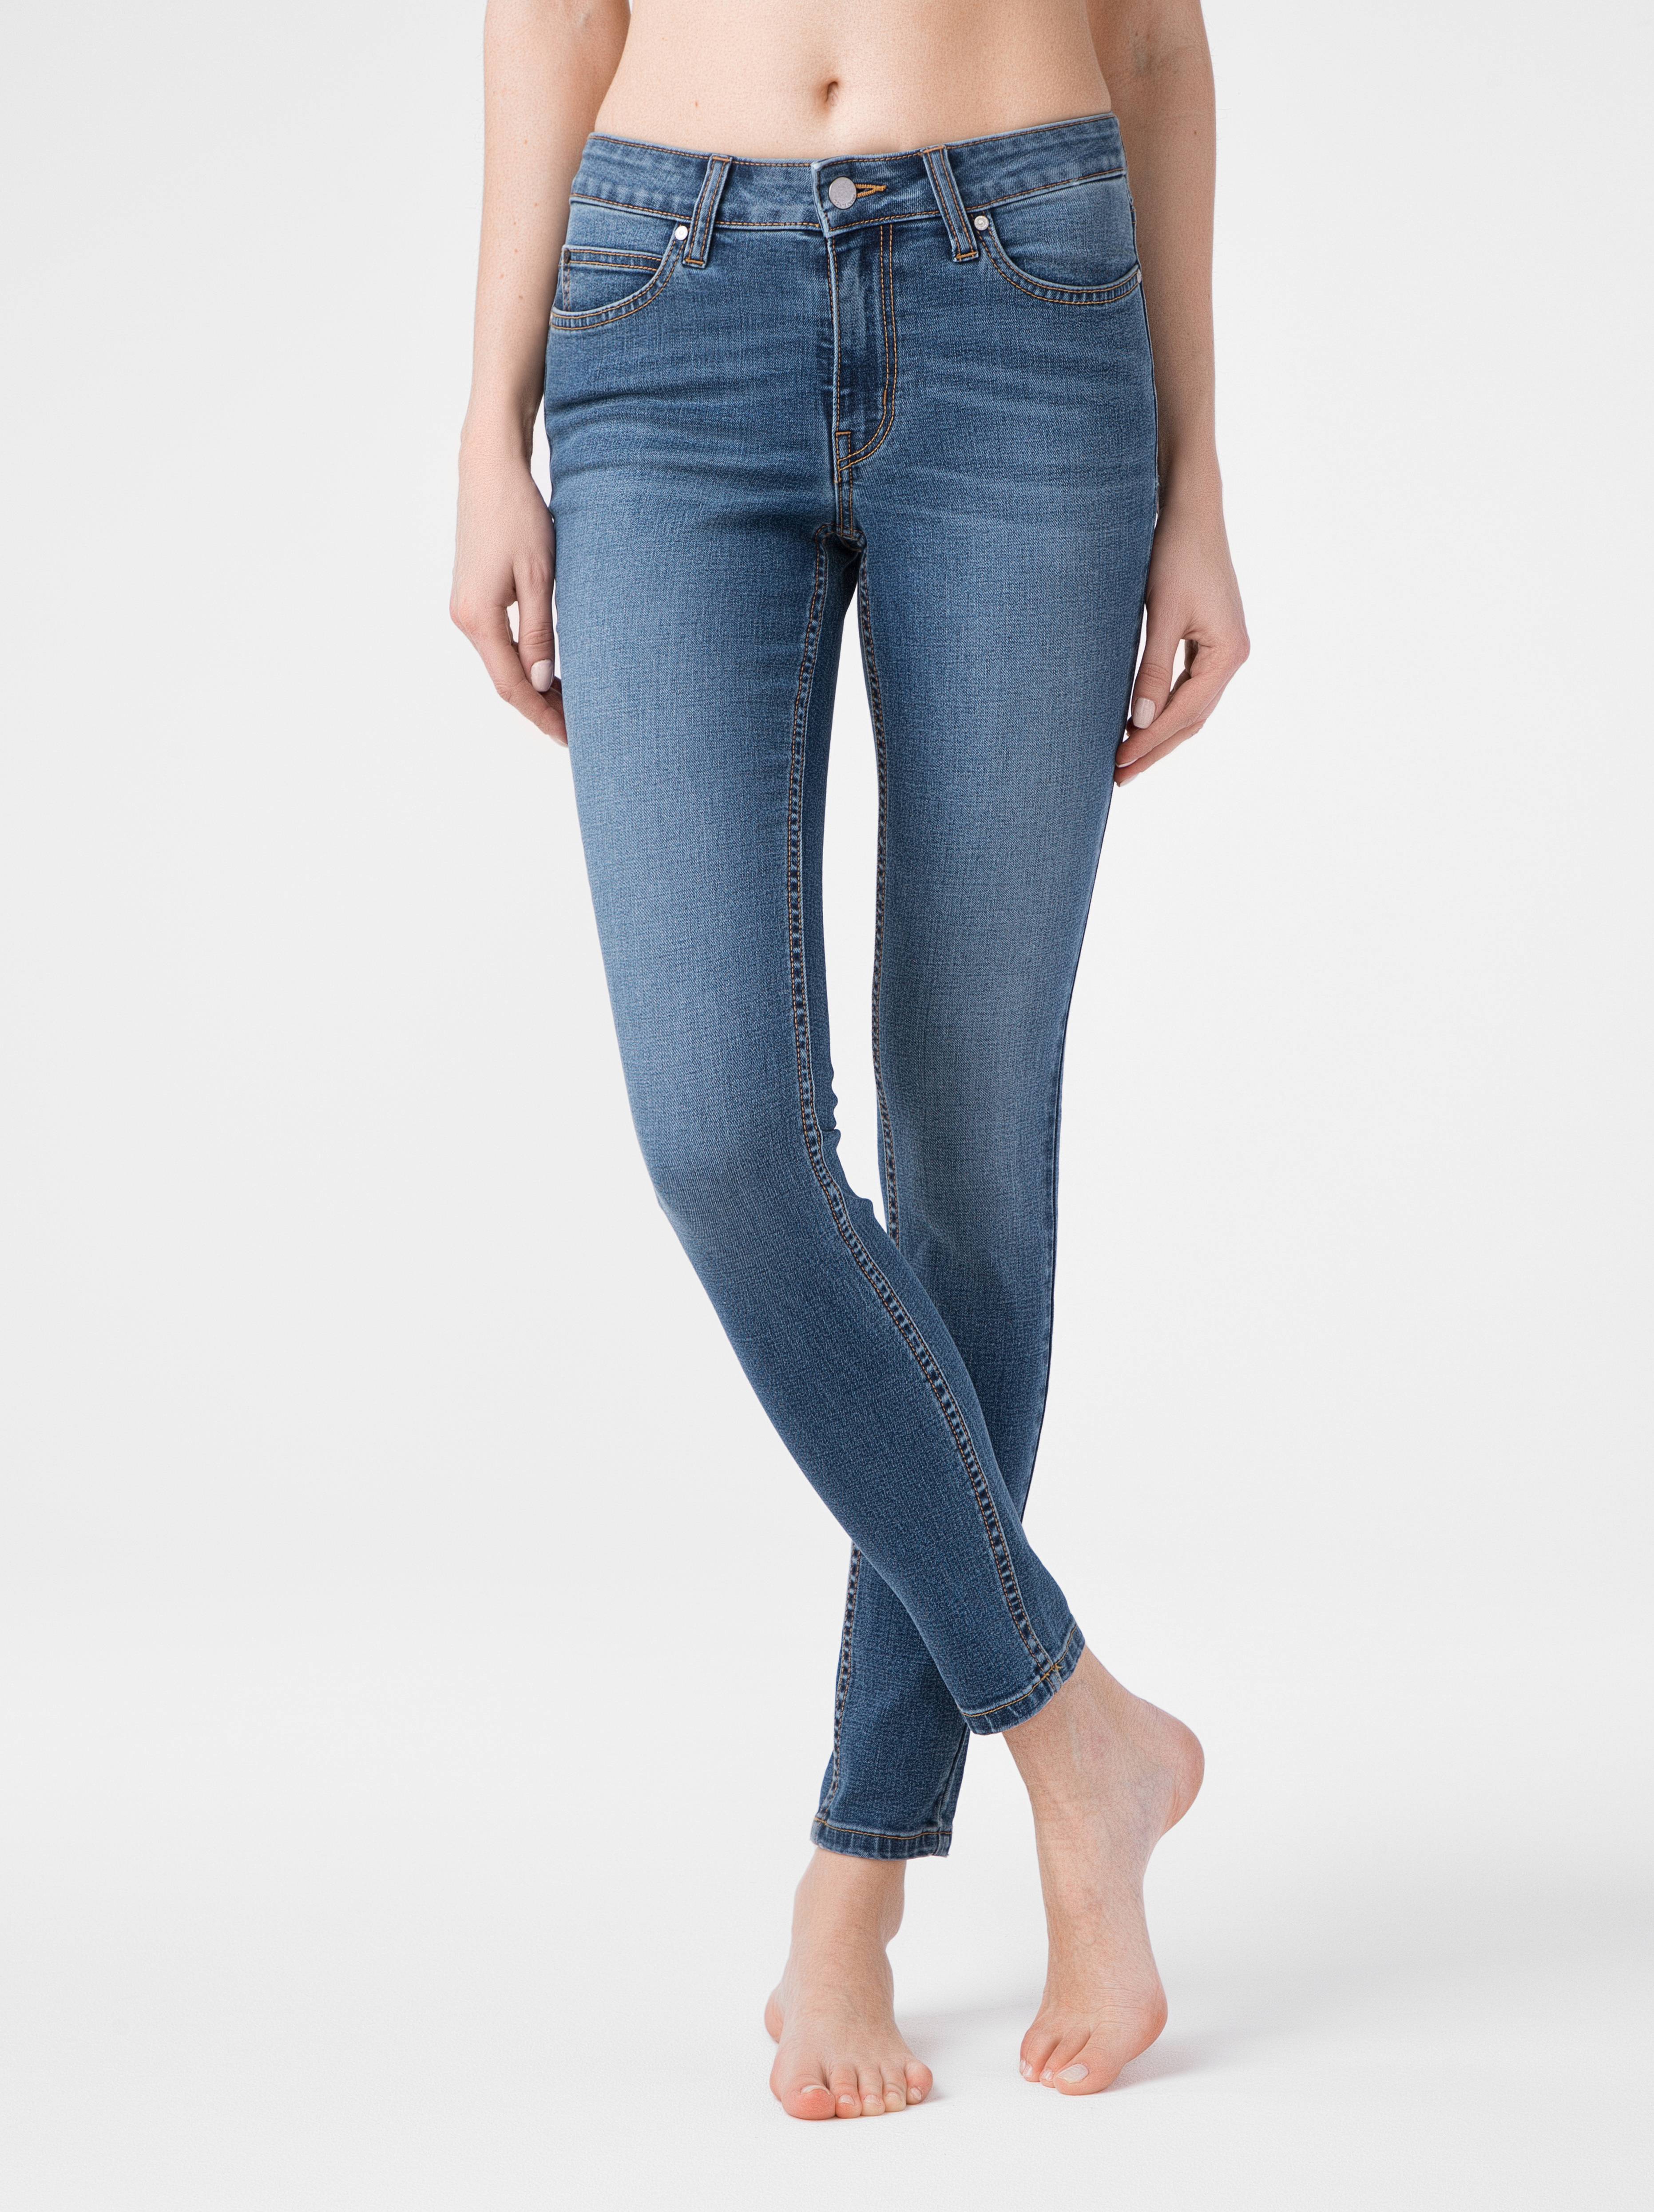 Ультракомфорные eco-friendly джинсы skinny со средней посадкой CON-182 Conte ⭐️, цвет authentic blue, размер 164-102 - фото 1